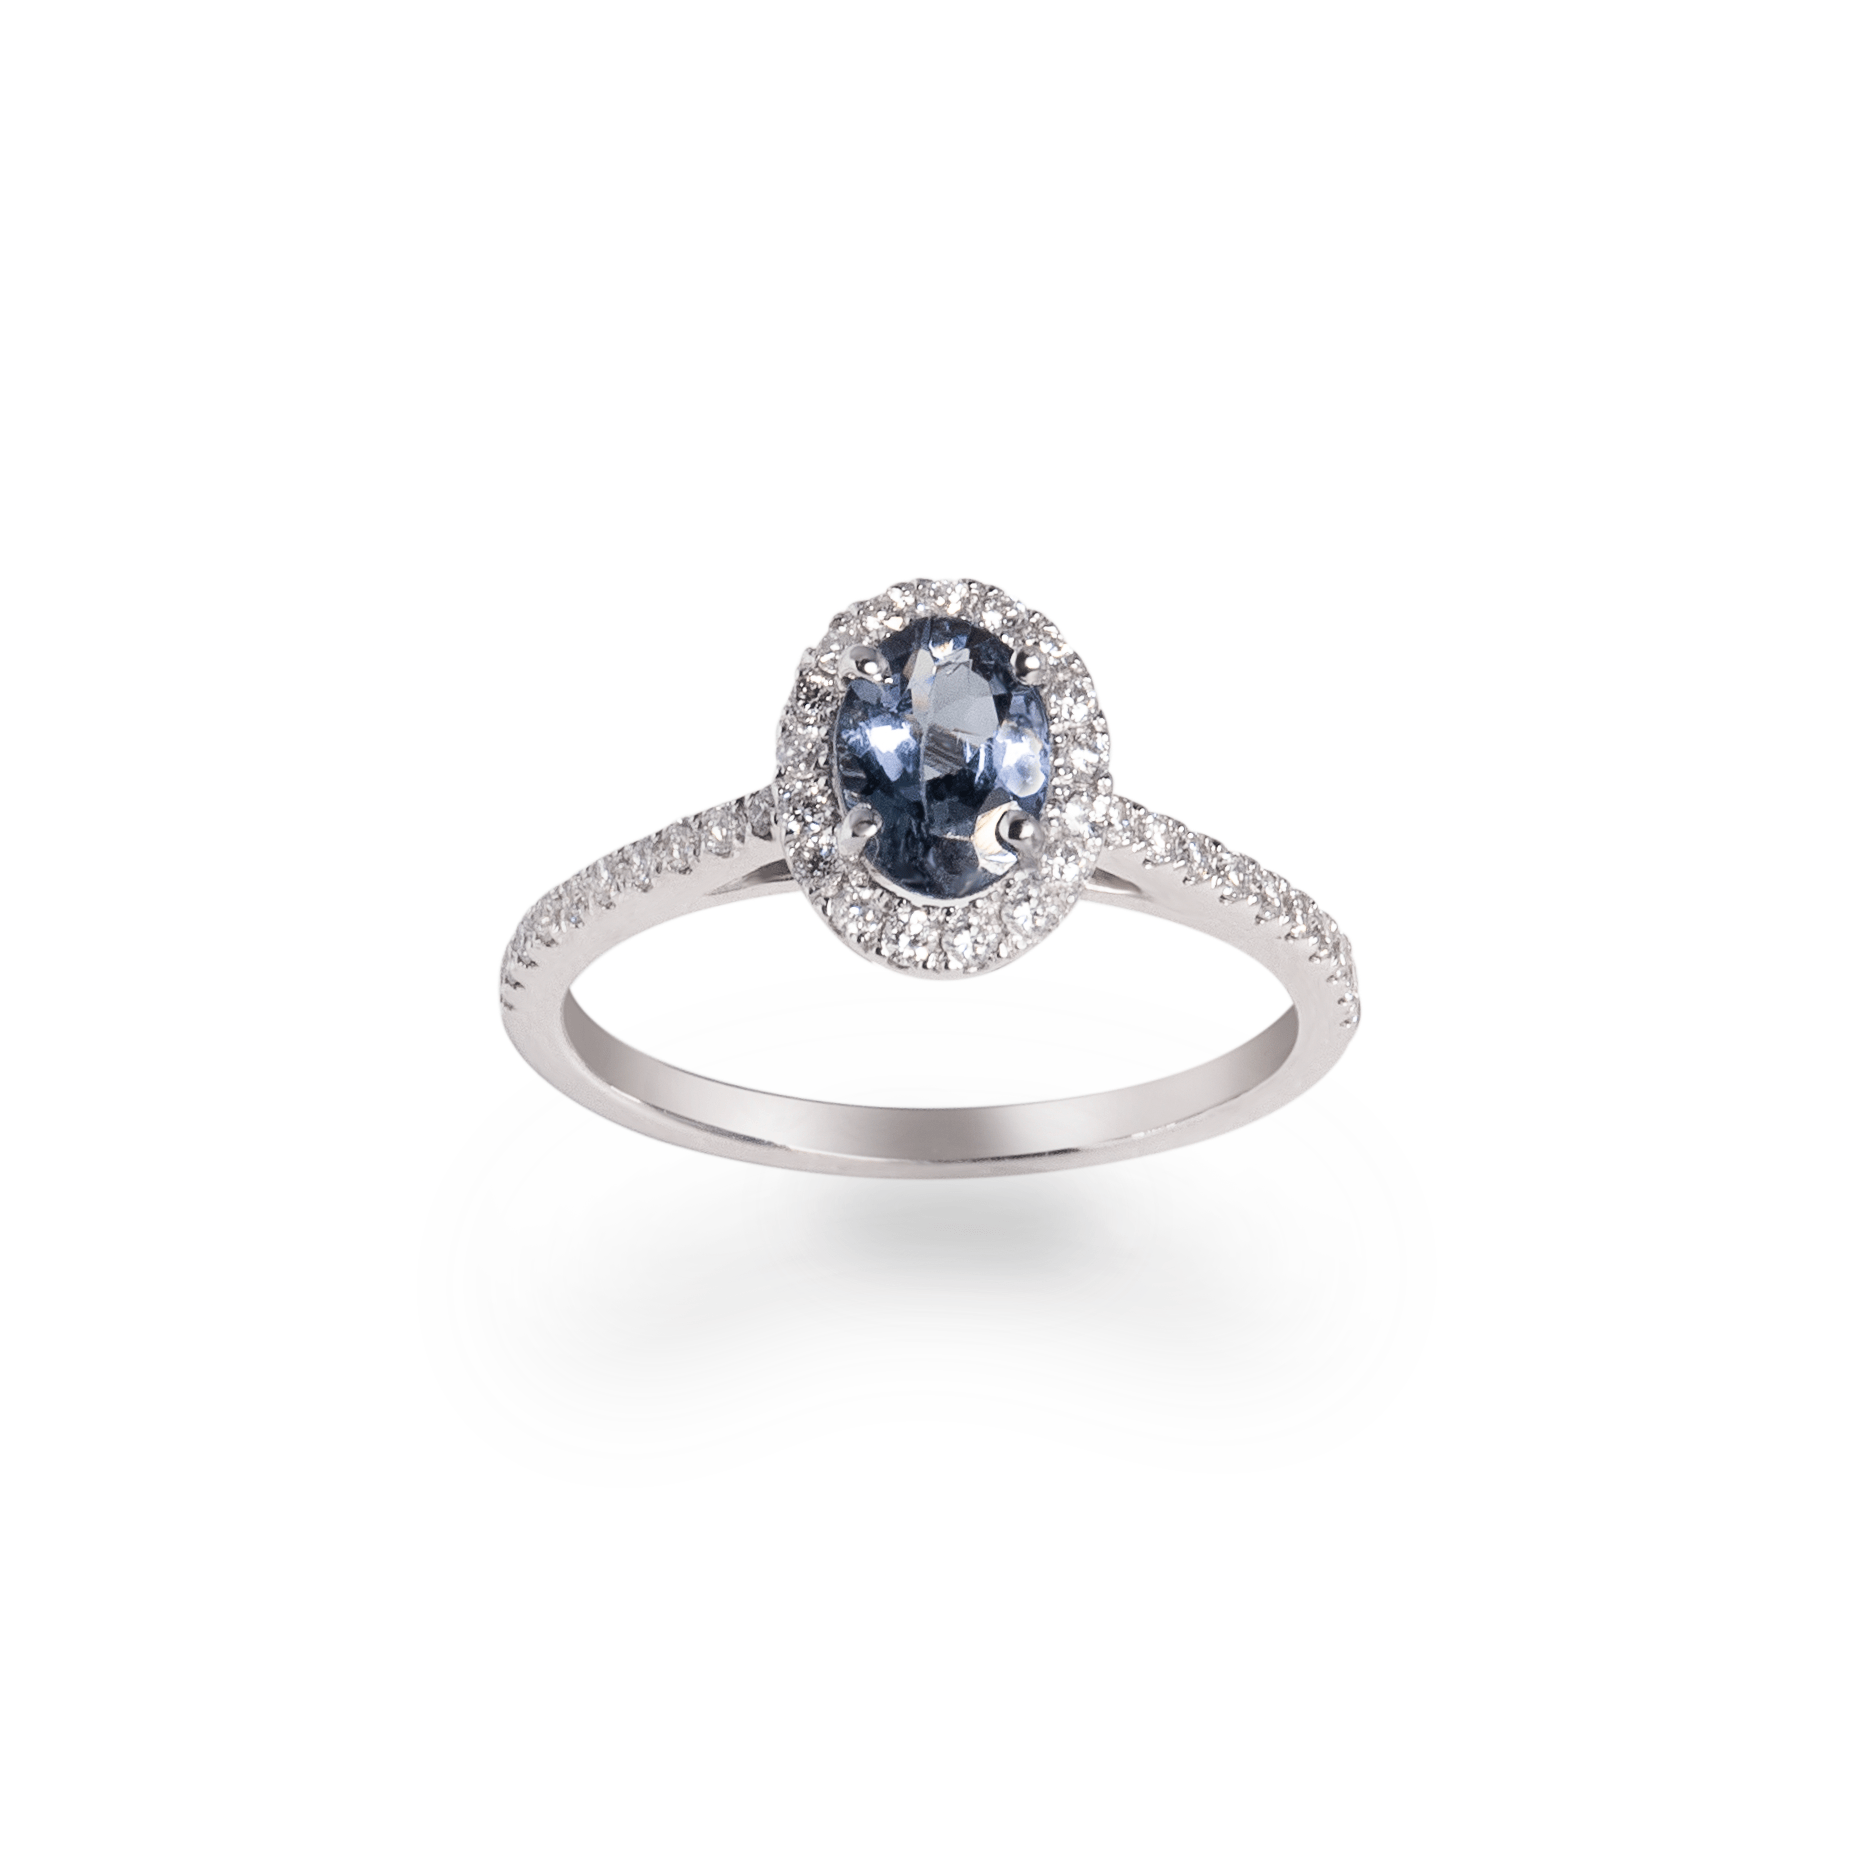 Chameleon tanzanite ring with diamond halo - جرس - Luxury Diamond Jewelry shop Dubai - SABA DIAMONDS